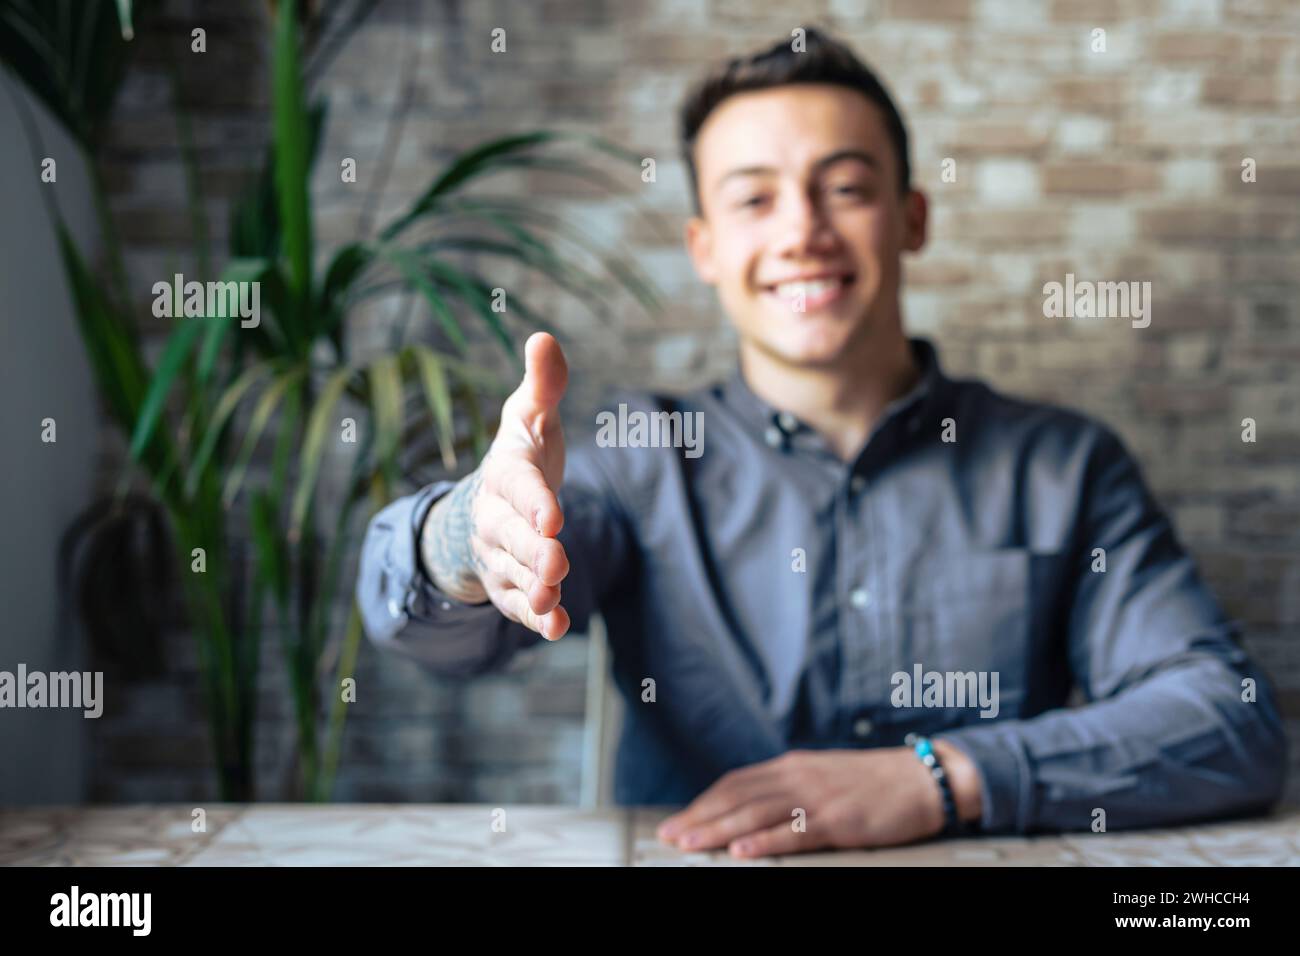 Porträt eines glücklichen jungen männlichen HR-Streckhand, der einen Zuschauer einlädt, sich dem Unternehmensteam anzuschließen, freundlicher, kompetenter Manager, der die Kamera ansieht und die Hand ausstreckt, um einen neuen Kunden oder Kollegen zu begrüßen Stockfoto